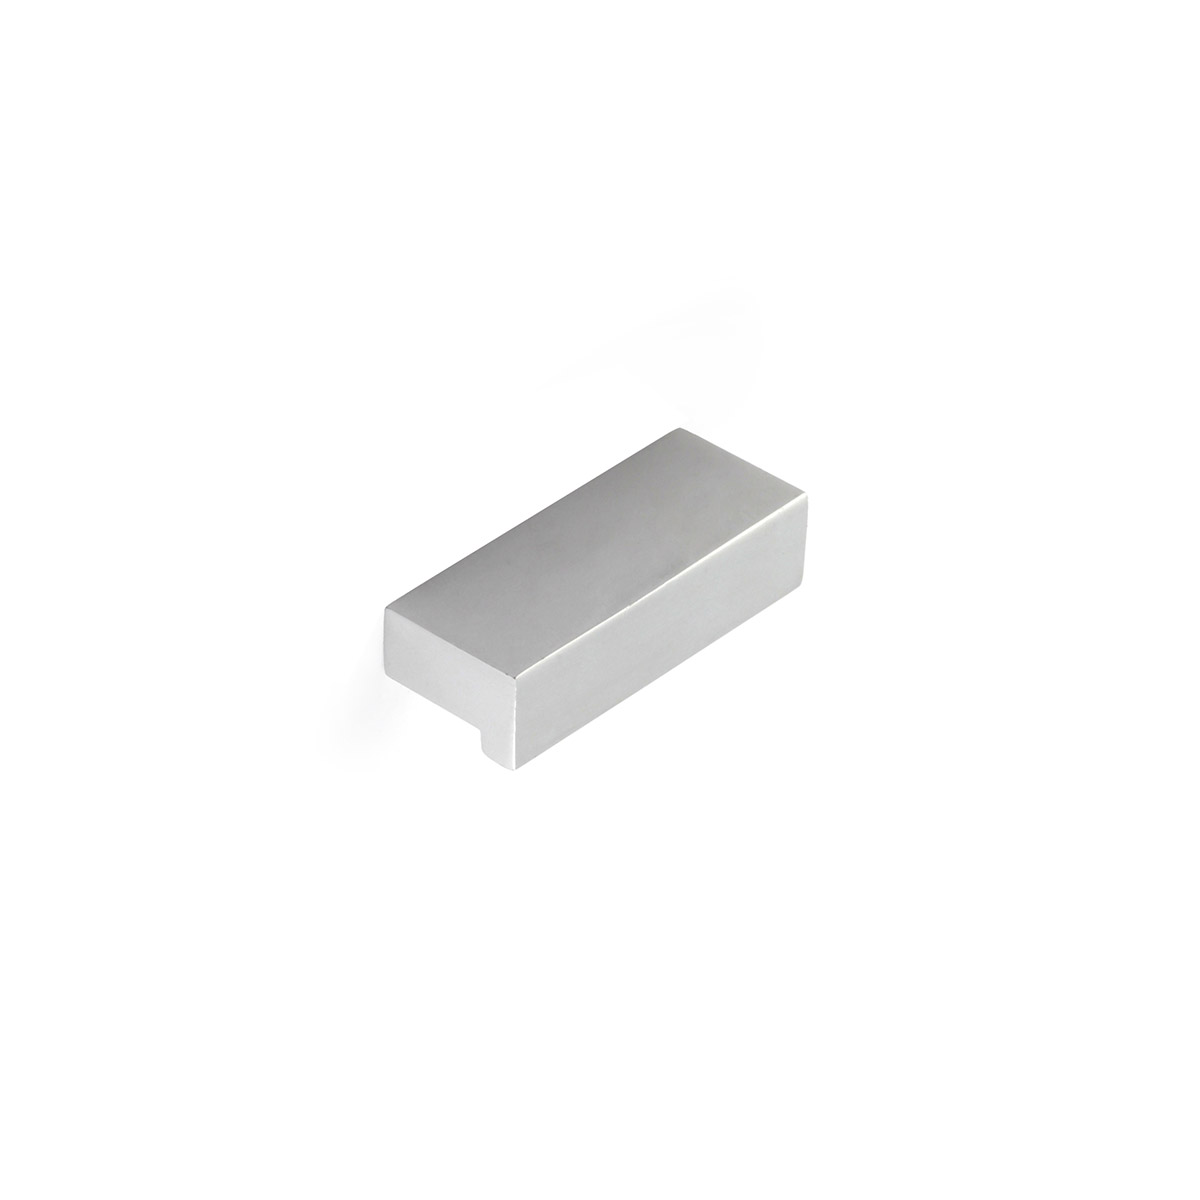 Asa de aluminio con acabado anodizado mate, dimensiones:44x12x18mm y entrepuntos:32mm